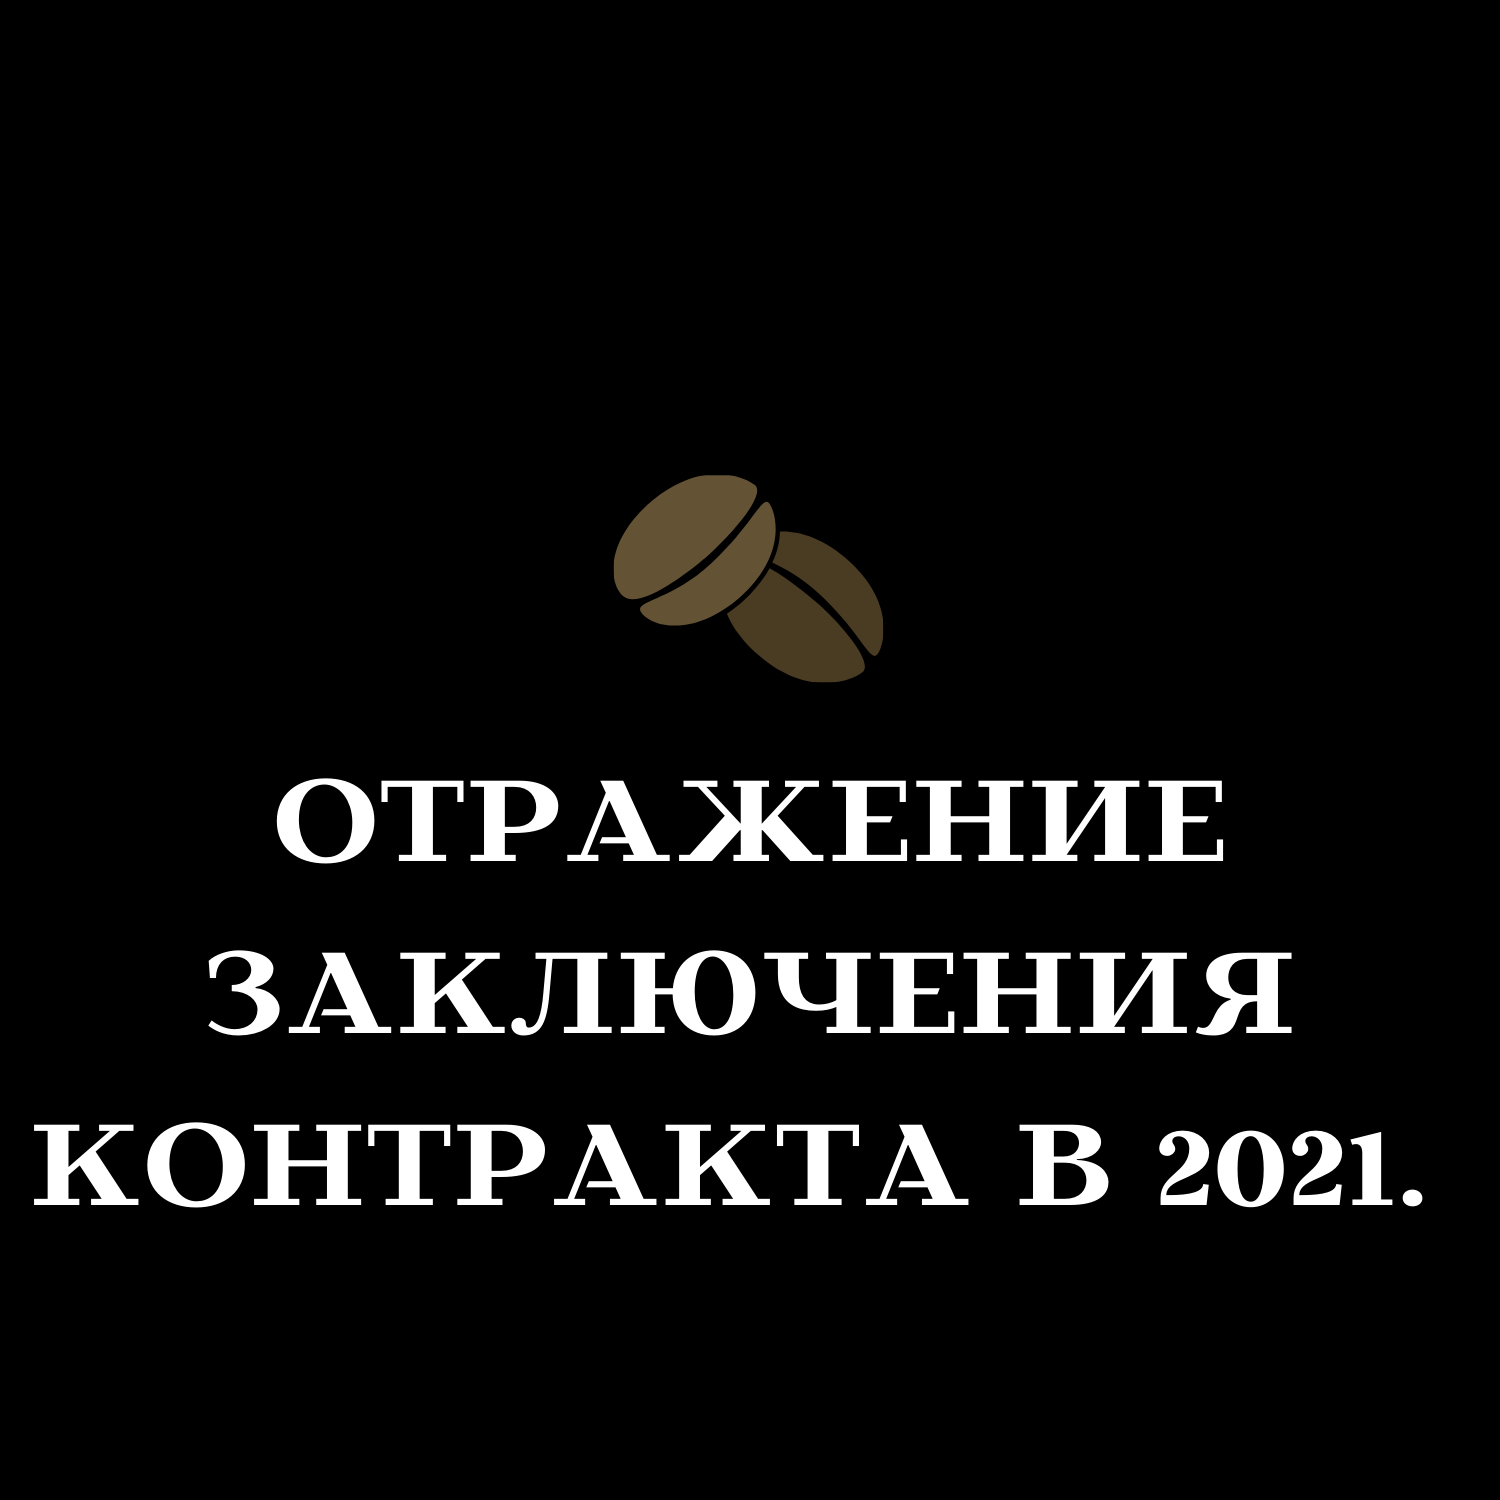 Отражение заключения контракта в 2021.